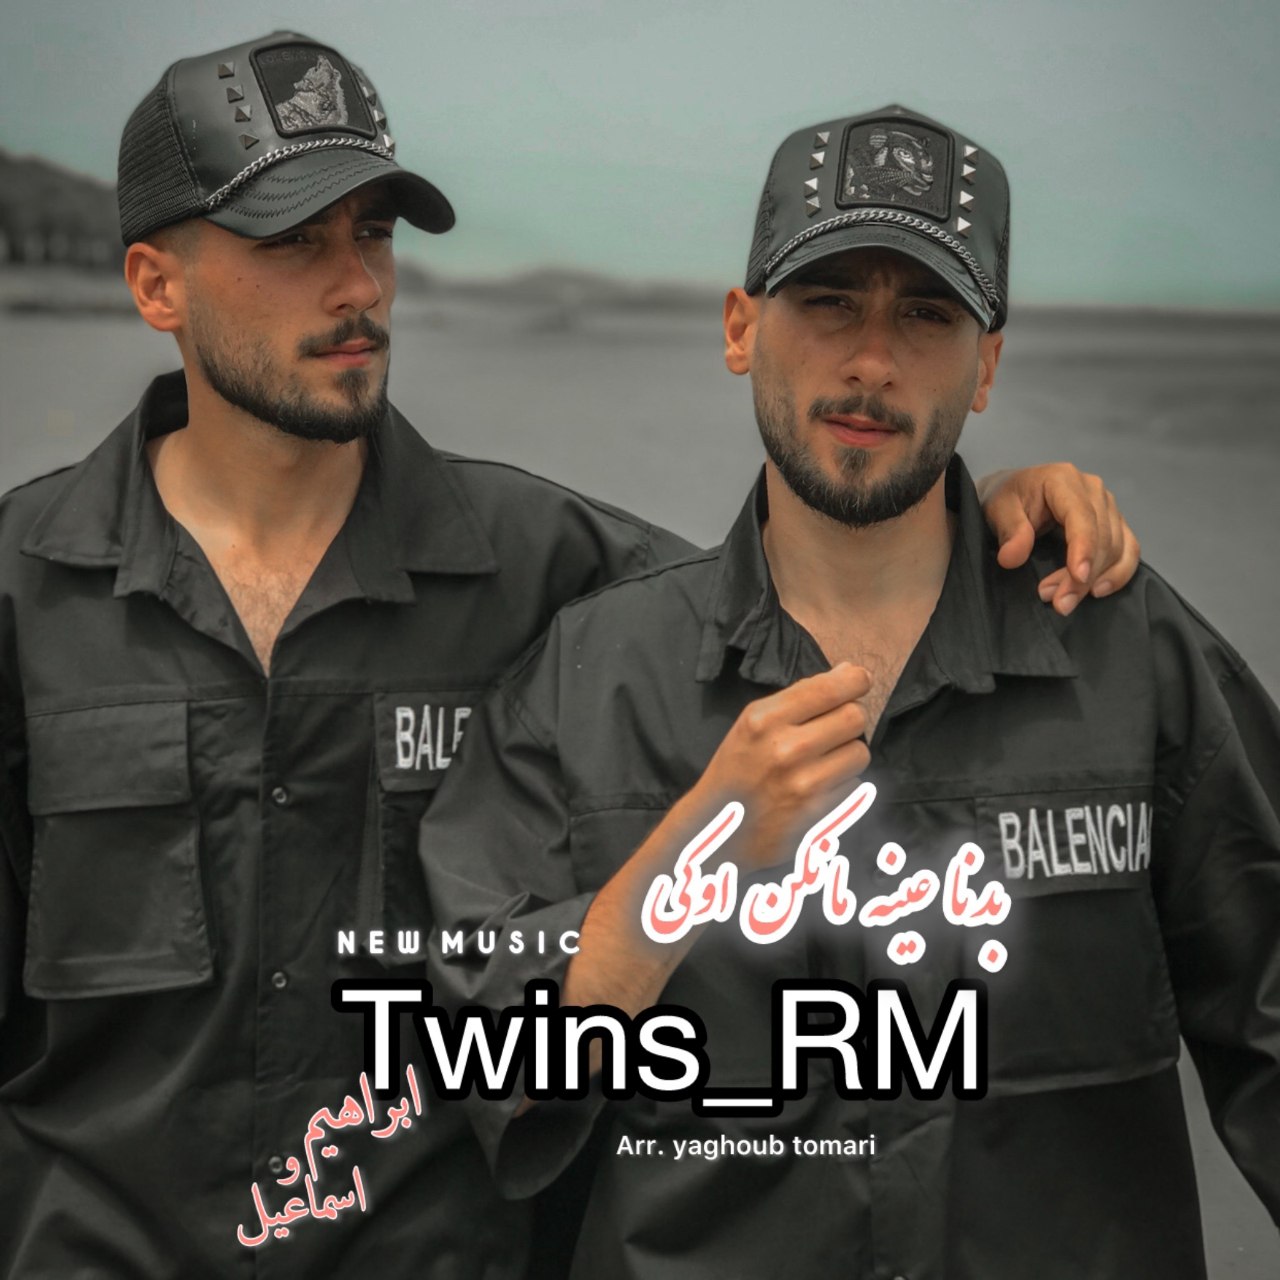 دانلود آهنگ جدید Twins_Rm به نام بدنا عین مانکن اوکی